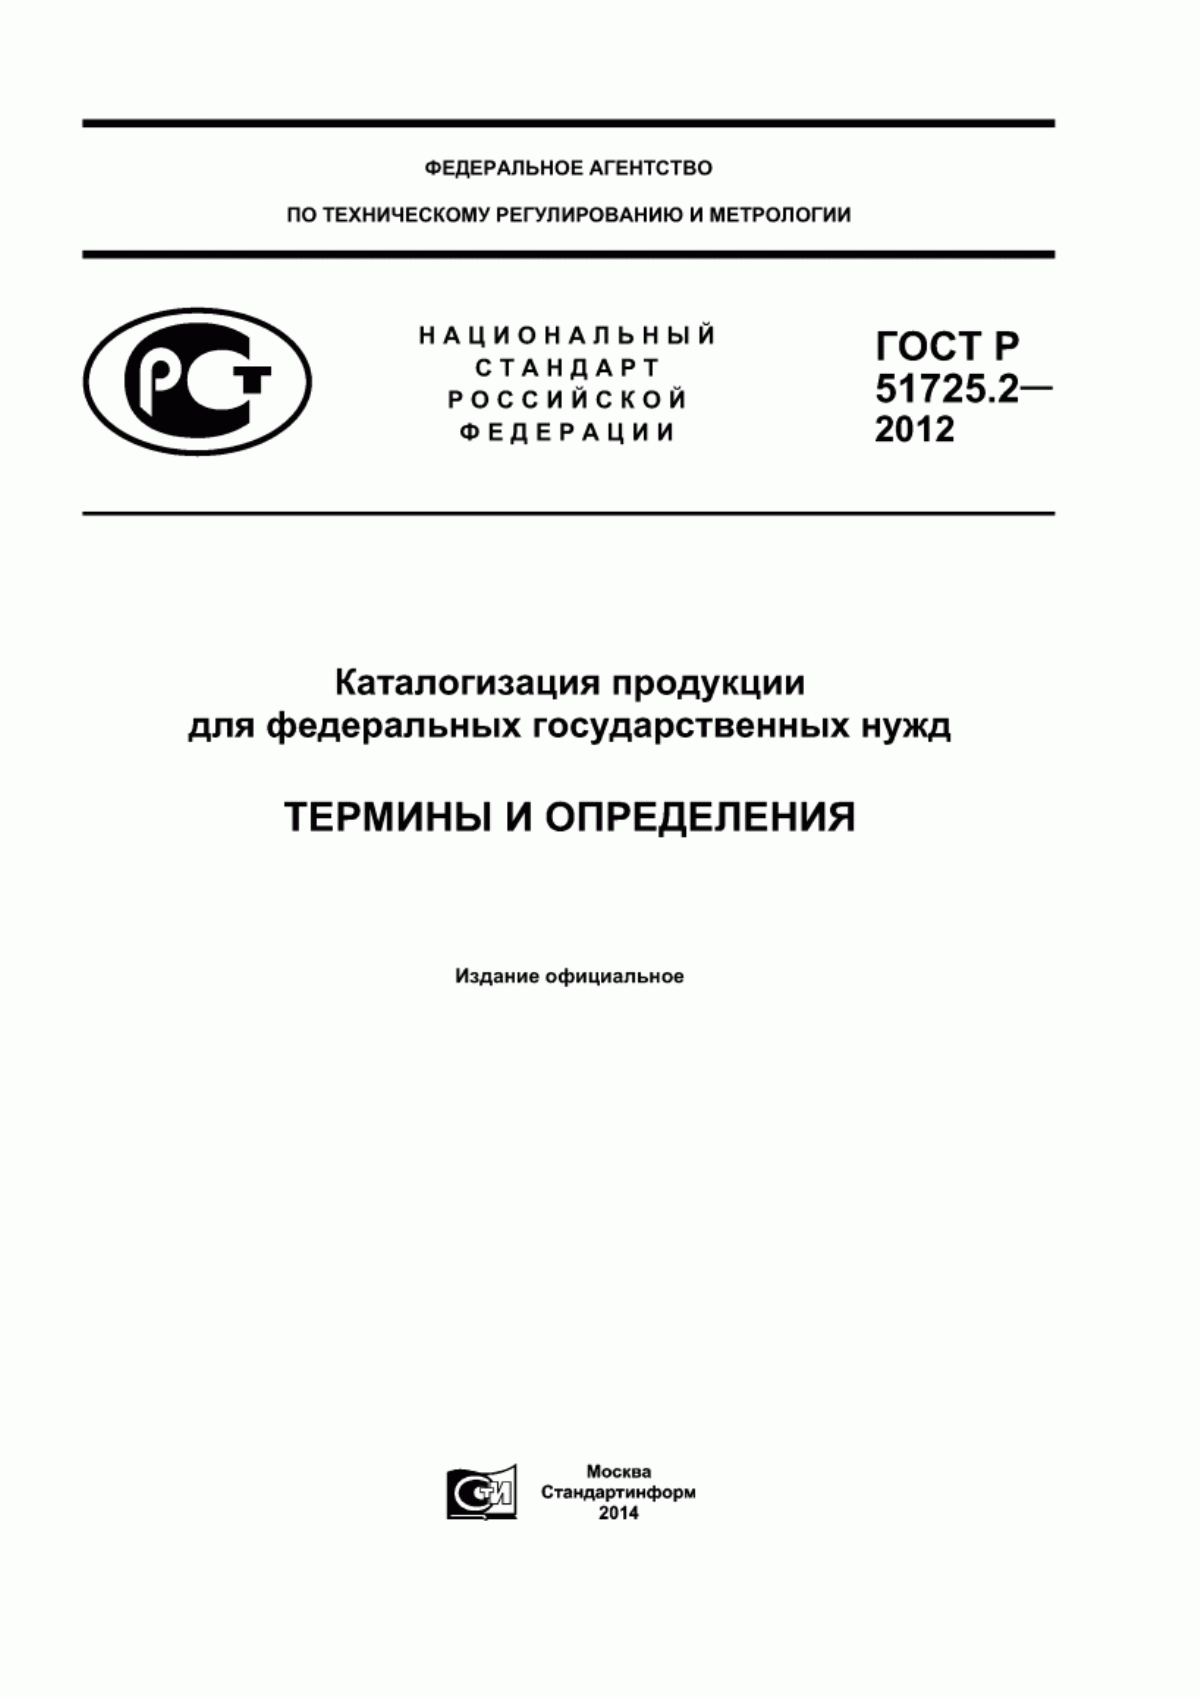 ГОСТ Р 51725.2-2012 Каталогизация продукции для федеральных государственных нужд. Термины и определения